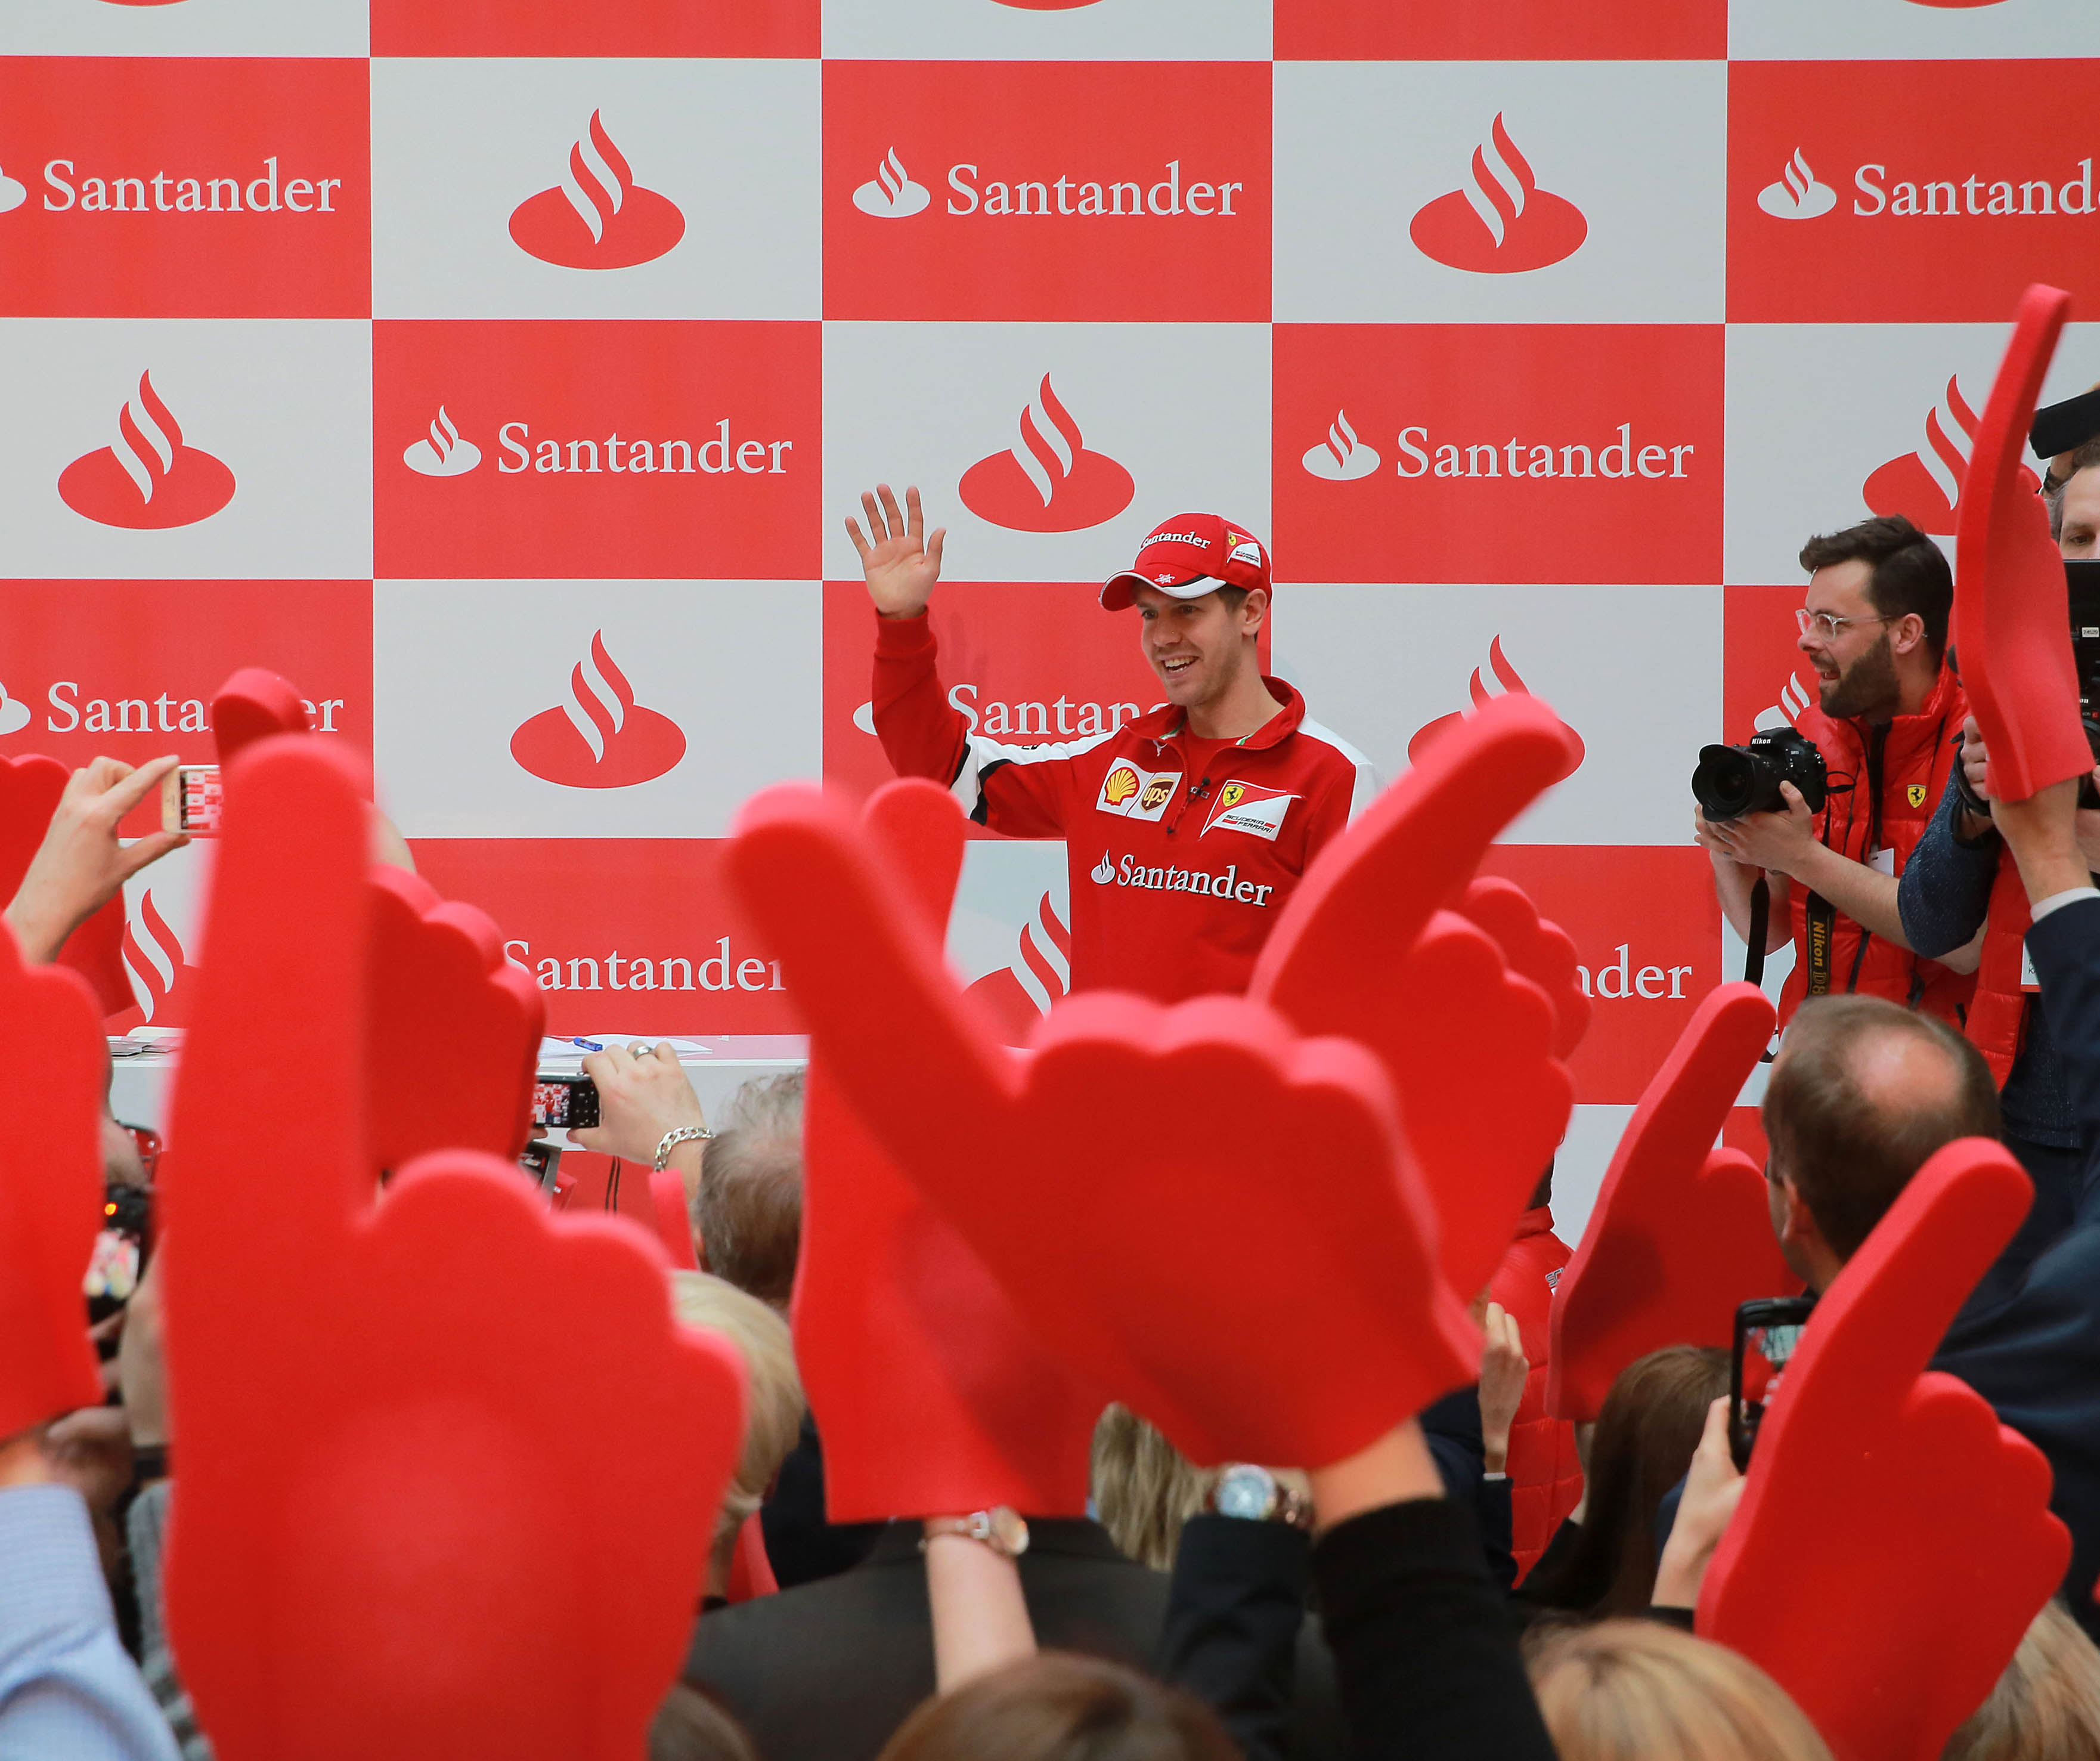 Meeting 2 / Santander Vettel Day / Mönchengladbach / Santander Consumer Bank - Buttler4Events